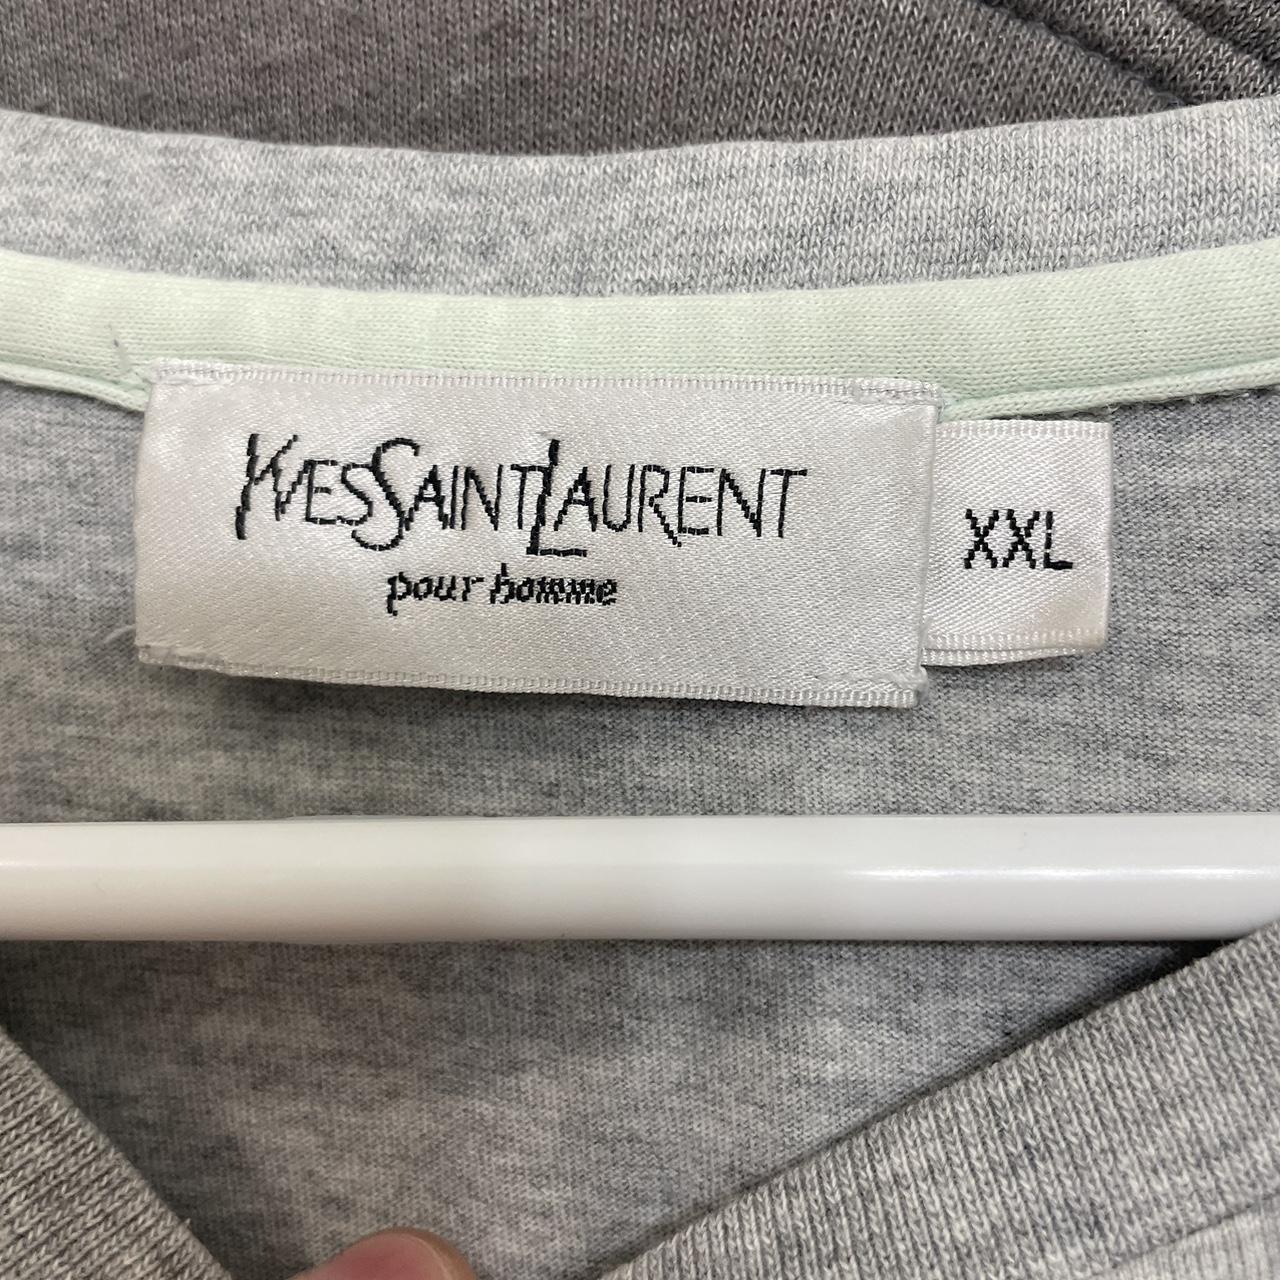 Vintage Yves Saint Laurent tee. Very clean. Tag says